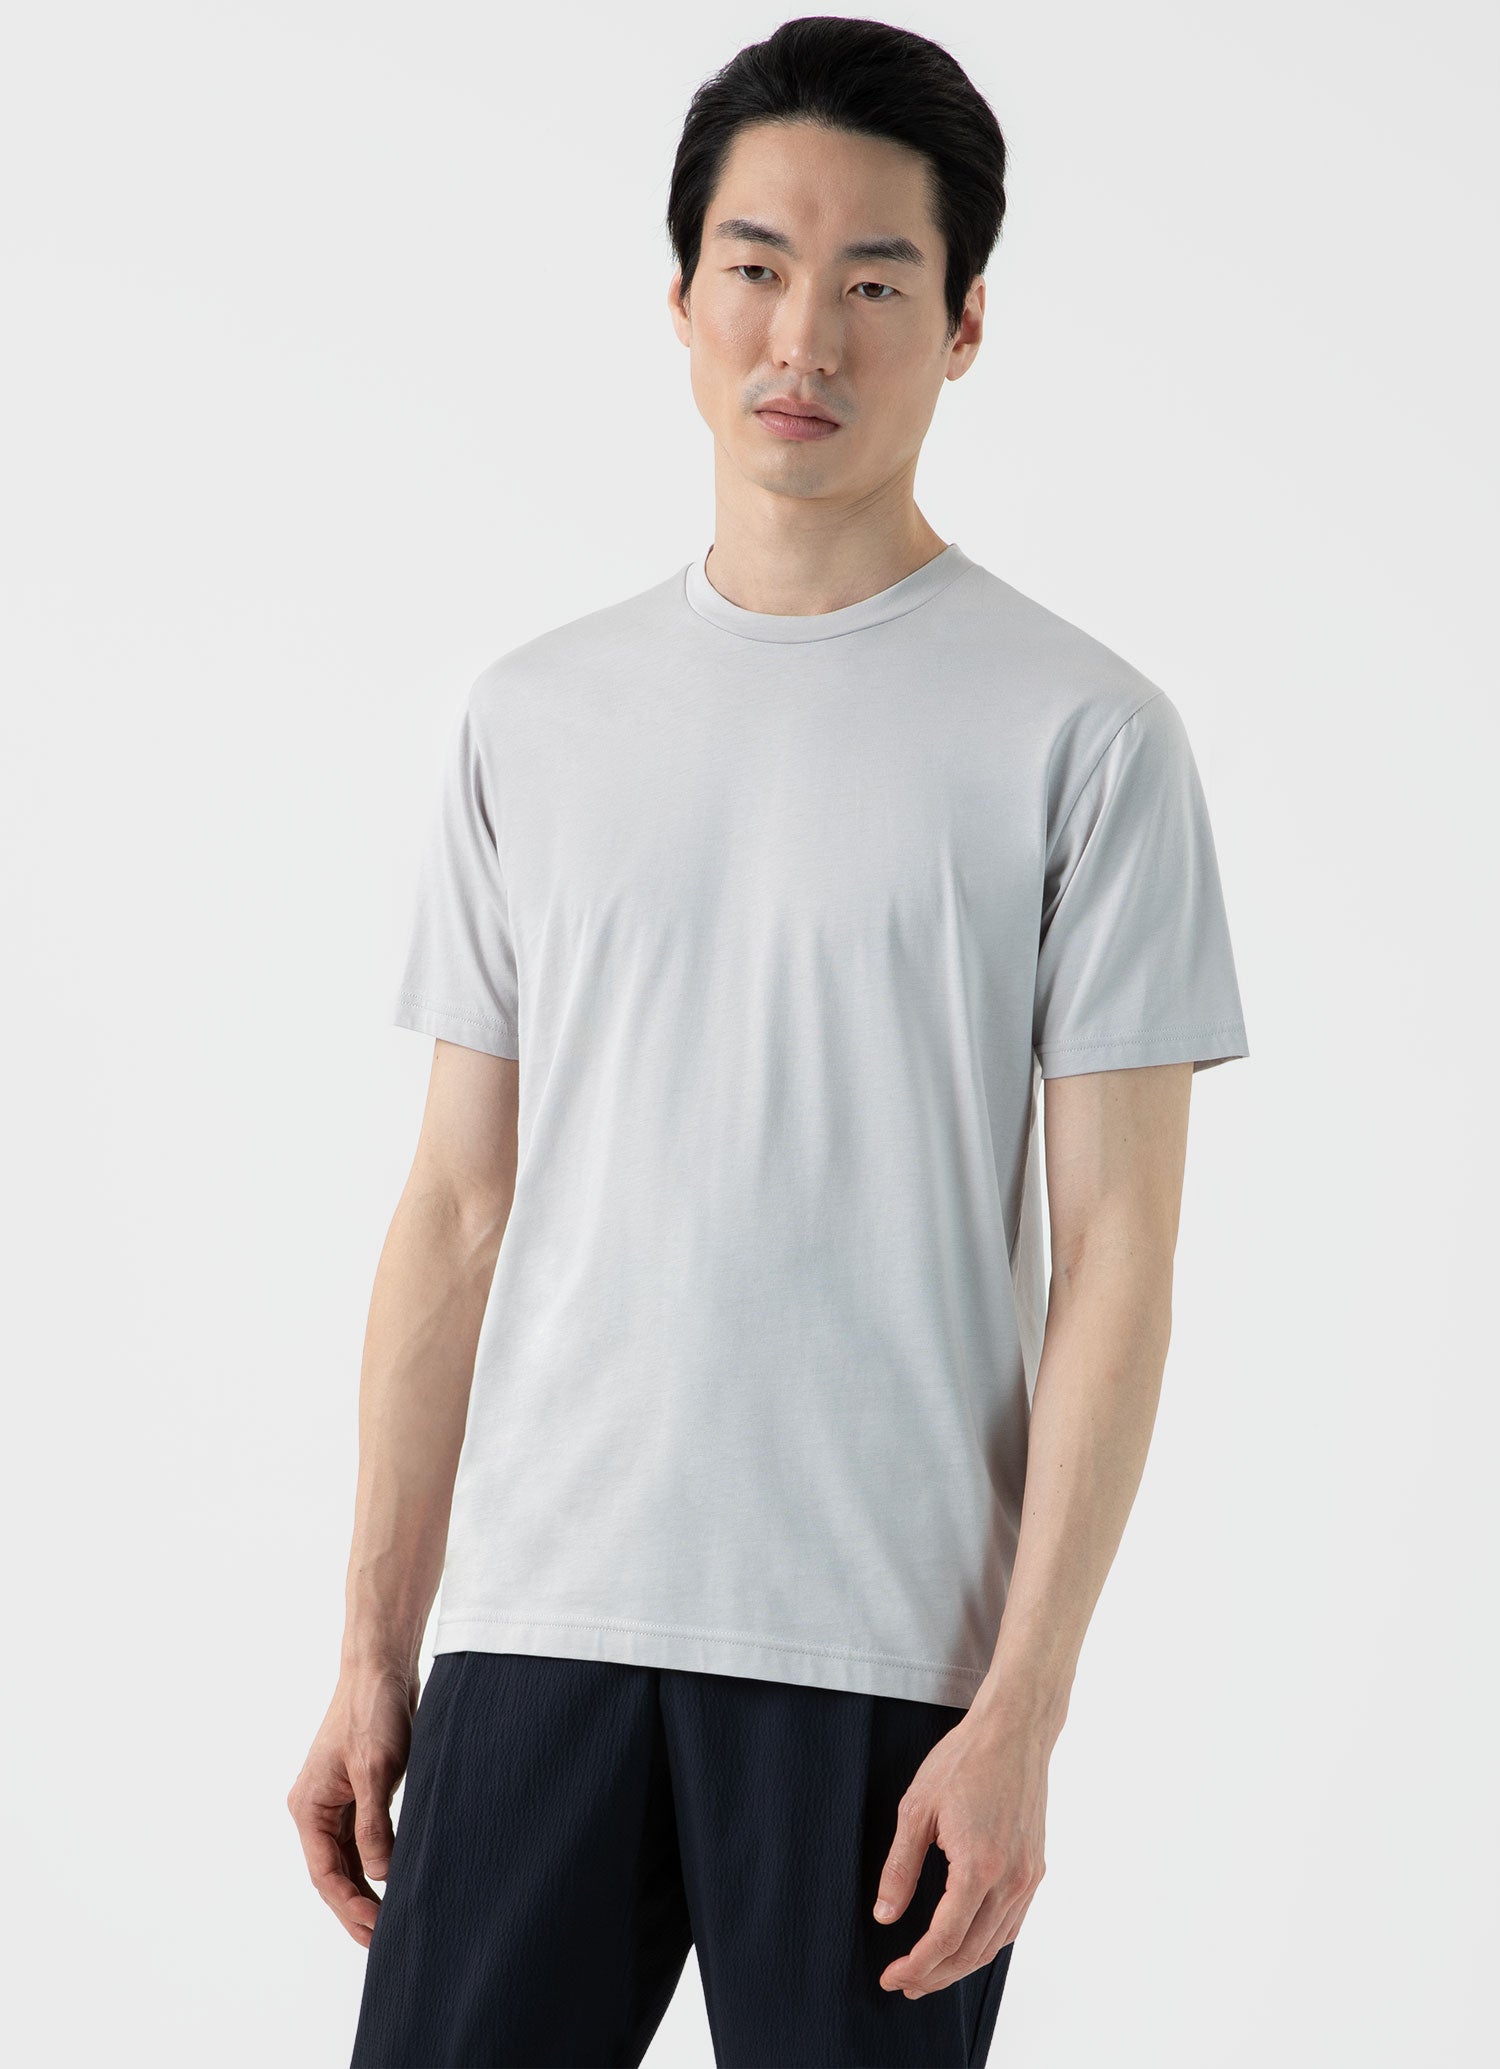 Men's Long Sleeve Waffle T-shirt in Ecru | Sunspel